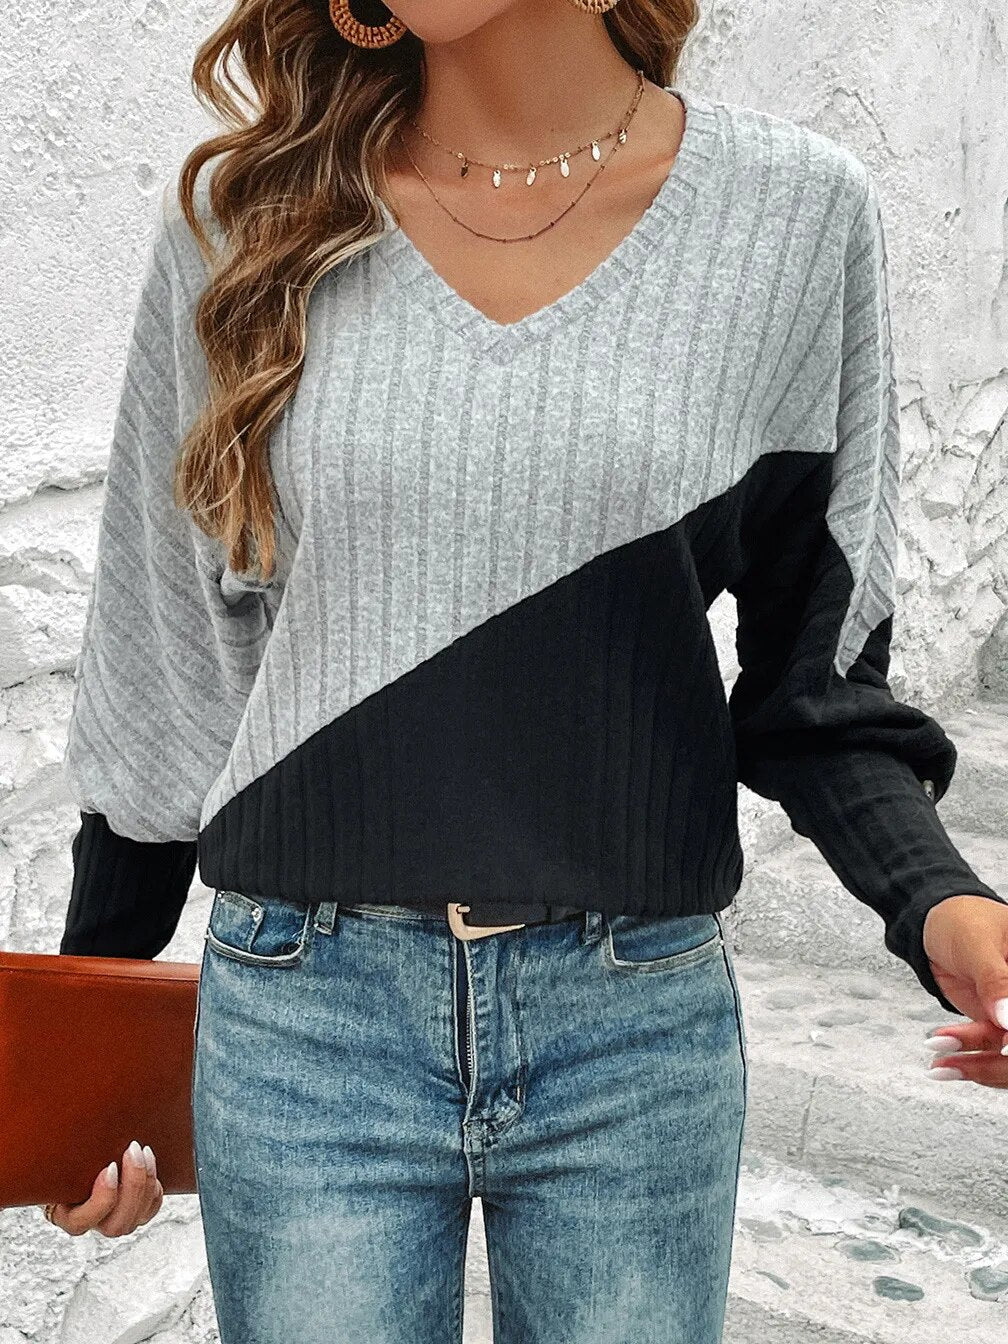 DIDI - Eleganter Pullover mit V-Ausschnitt in Blockfarben